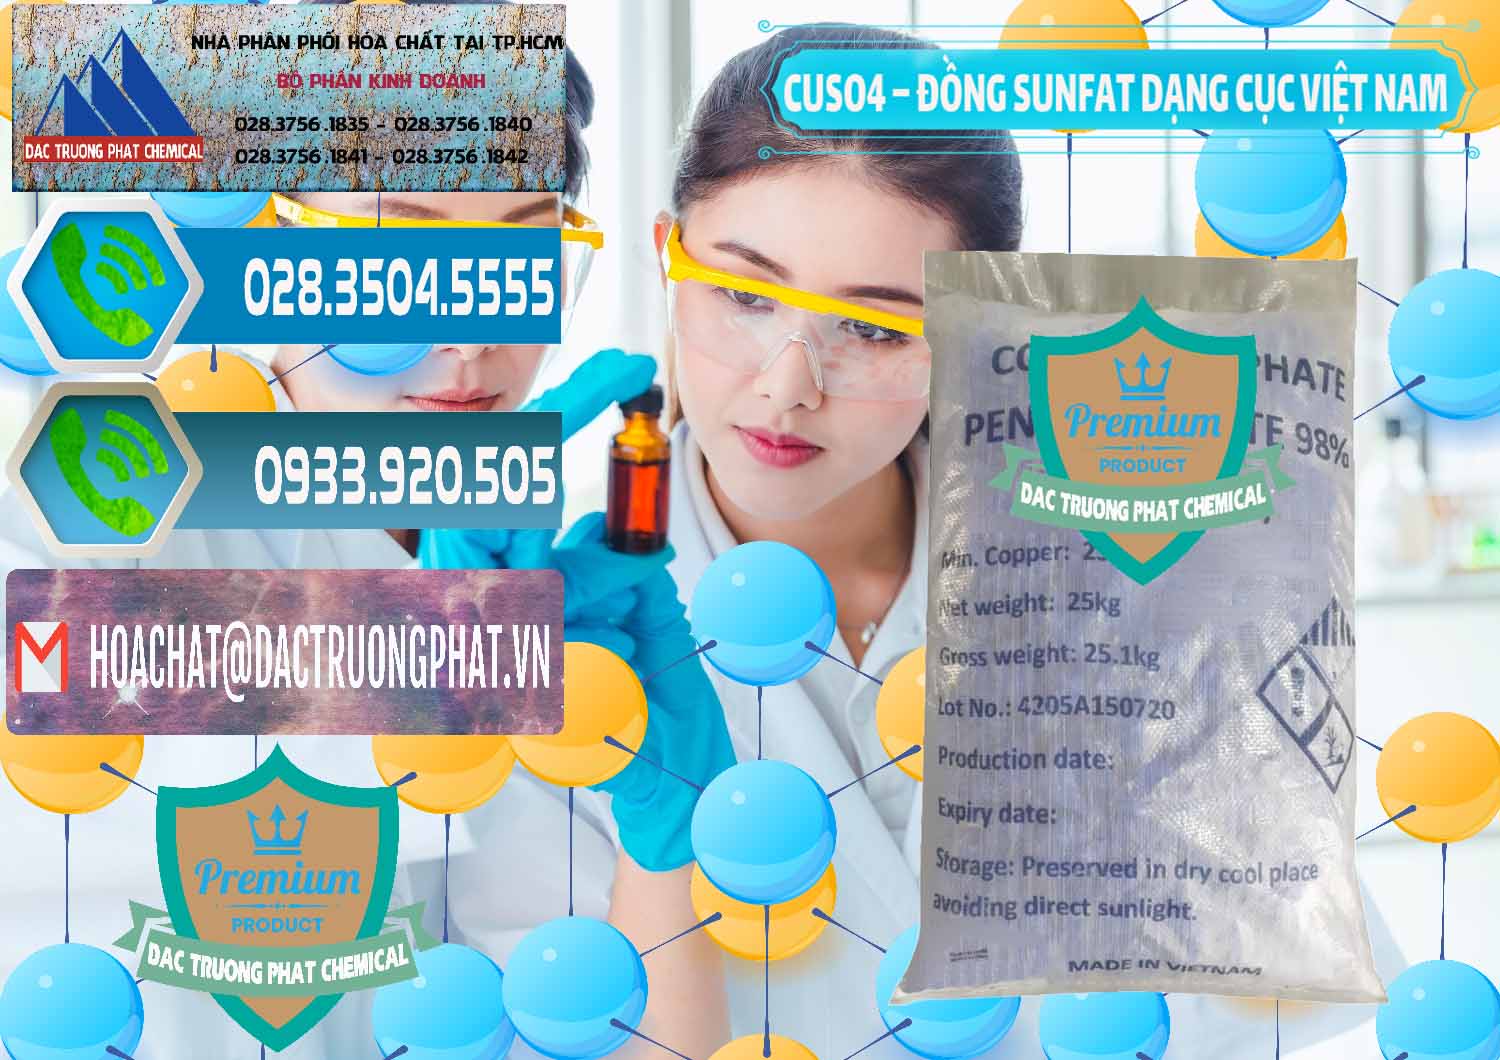 Công ty chuyên kinh doanh và phân phối CUSO4 – Đồng Sunfat Dạng Cục Việt Nam - 0303 - Chuyên bán _ phân phối hóa chất tại TP.HCM - congtyhoachat.net